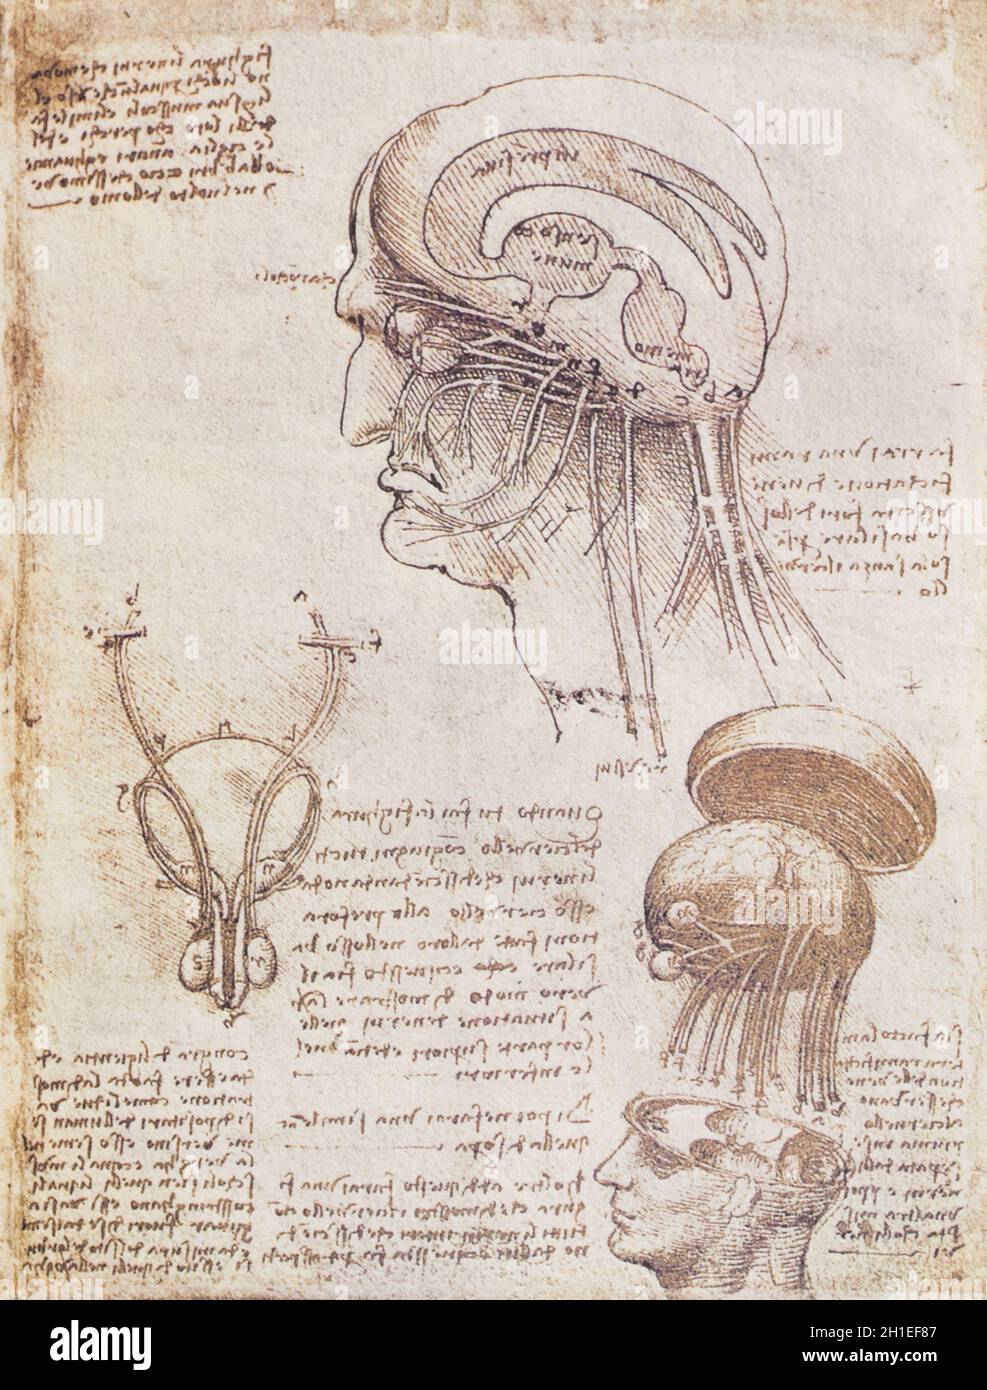 Disegno fisiologico del cervello e del cranio umano di Leonardo da Vinci, 1510. Royal Collection, Regno Unito Foto Stock